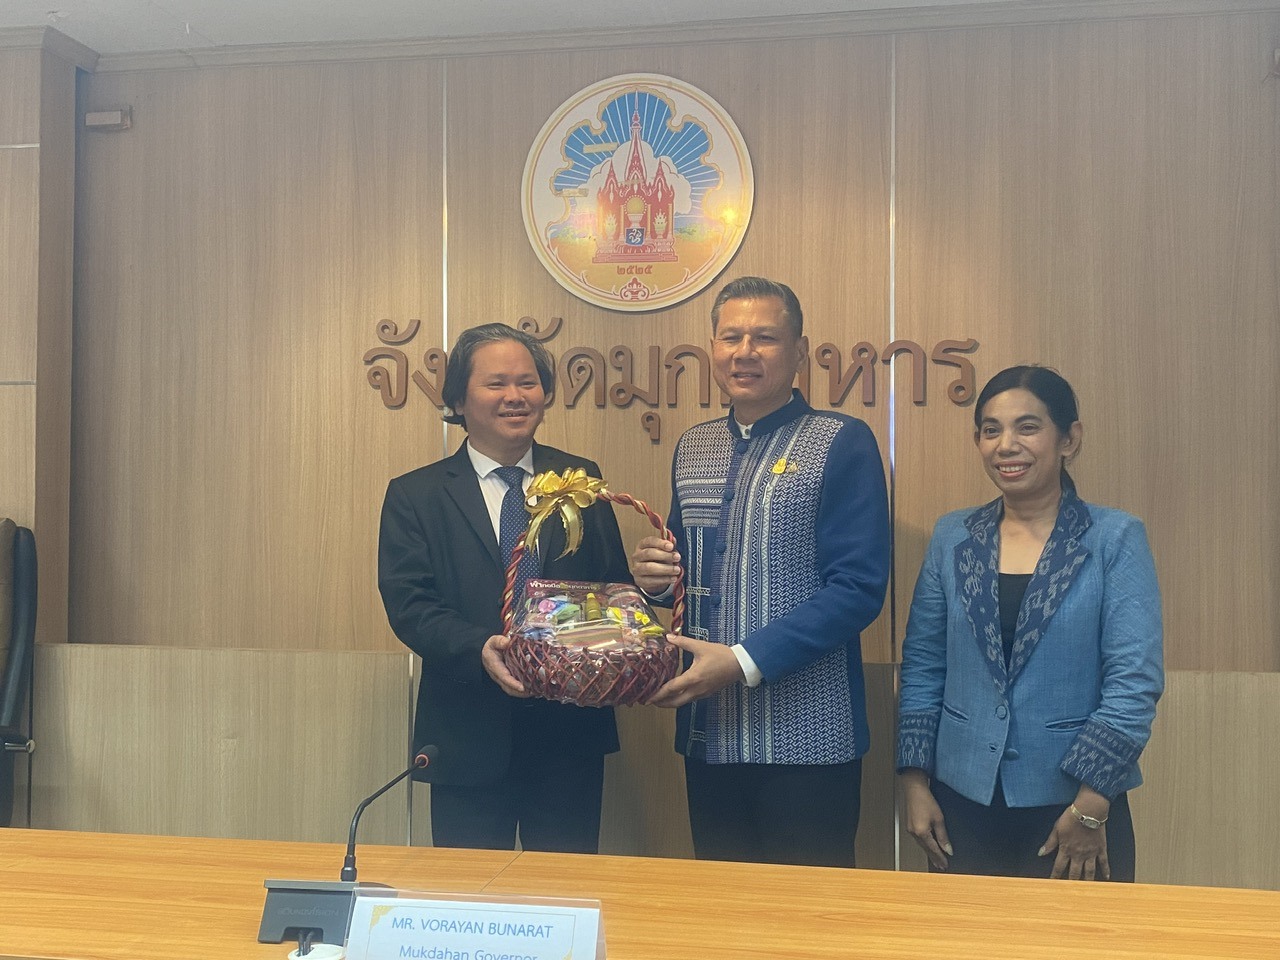 Tỉnh trưởng Mukdahan Worayan Bunarat tặng quà cho đoàn công tác tỉnh Quảng Trị - Ảnh: N.T.C